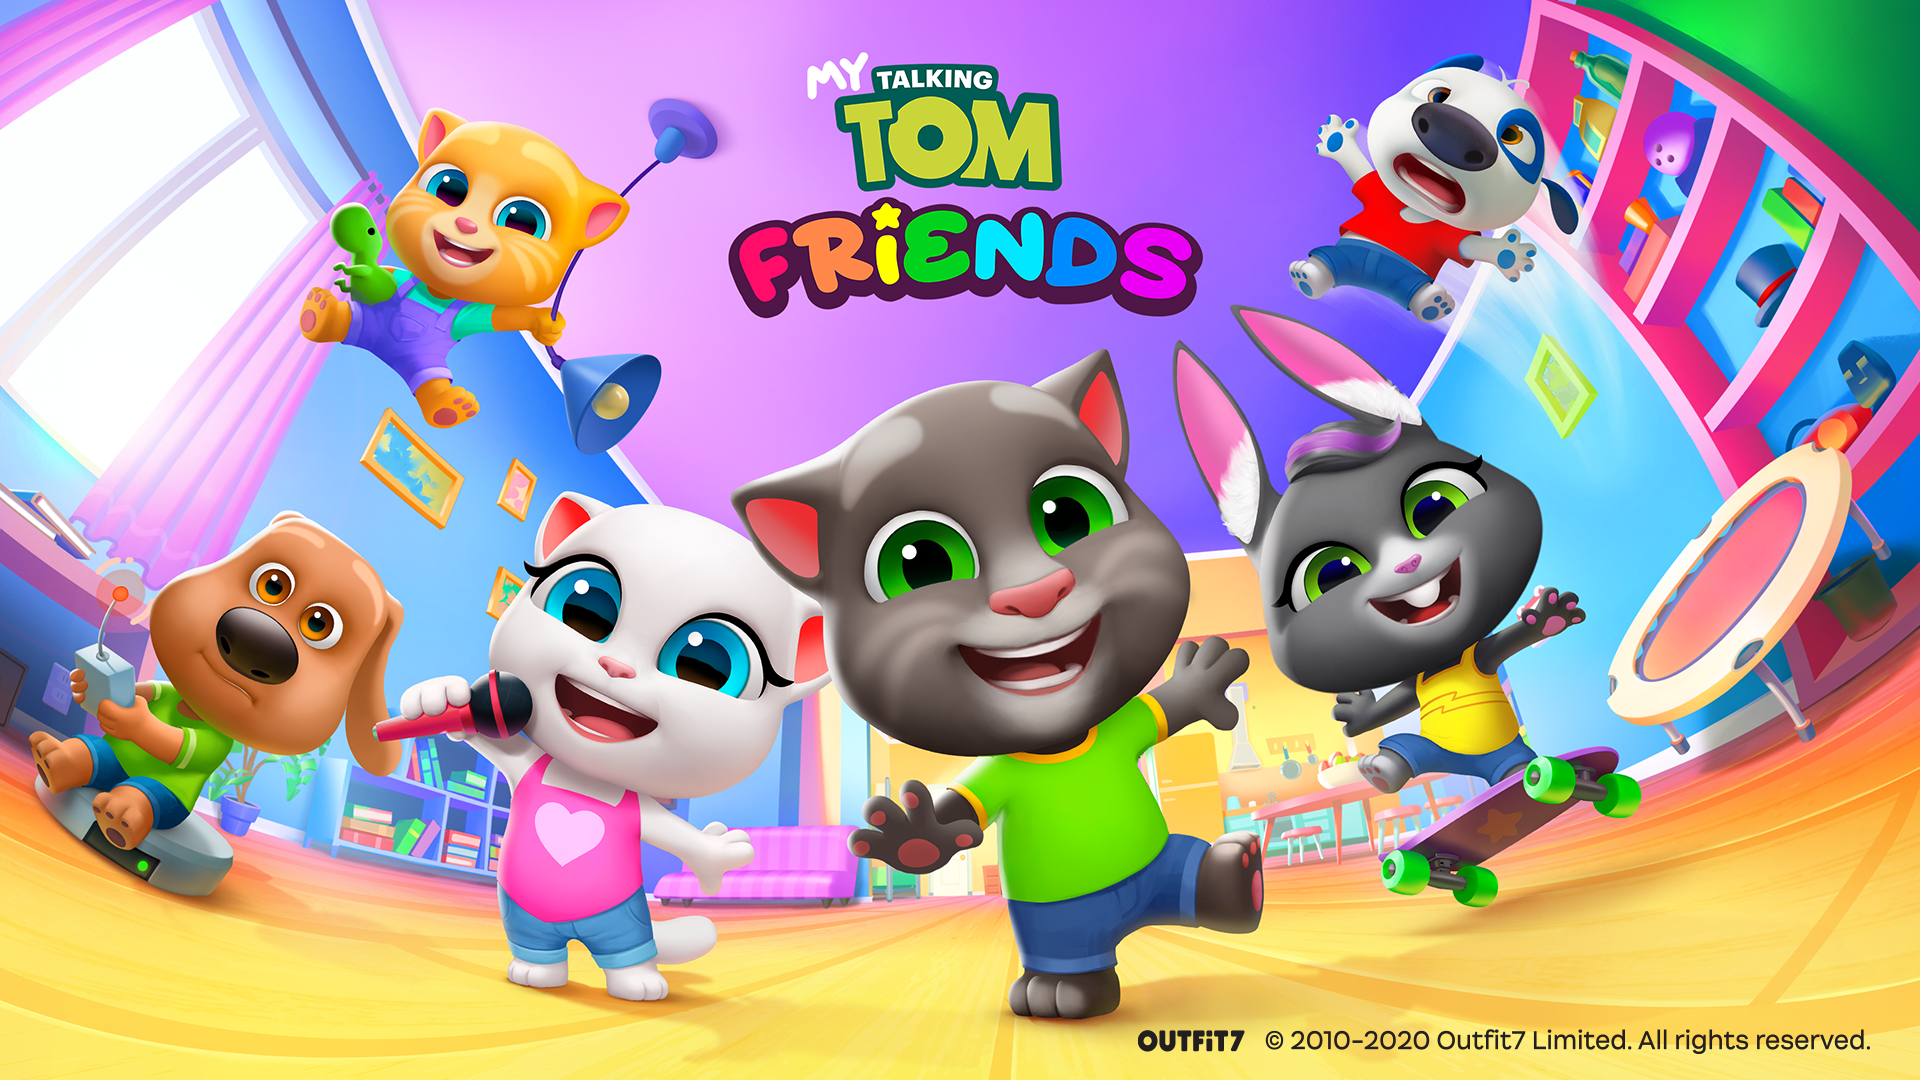 Meu Talking Tom: Amigos' entra em pré-reserva na Google Play e será  disponibilizado em junho 